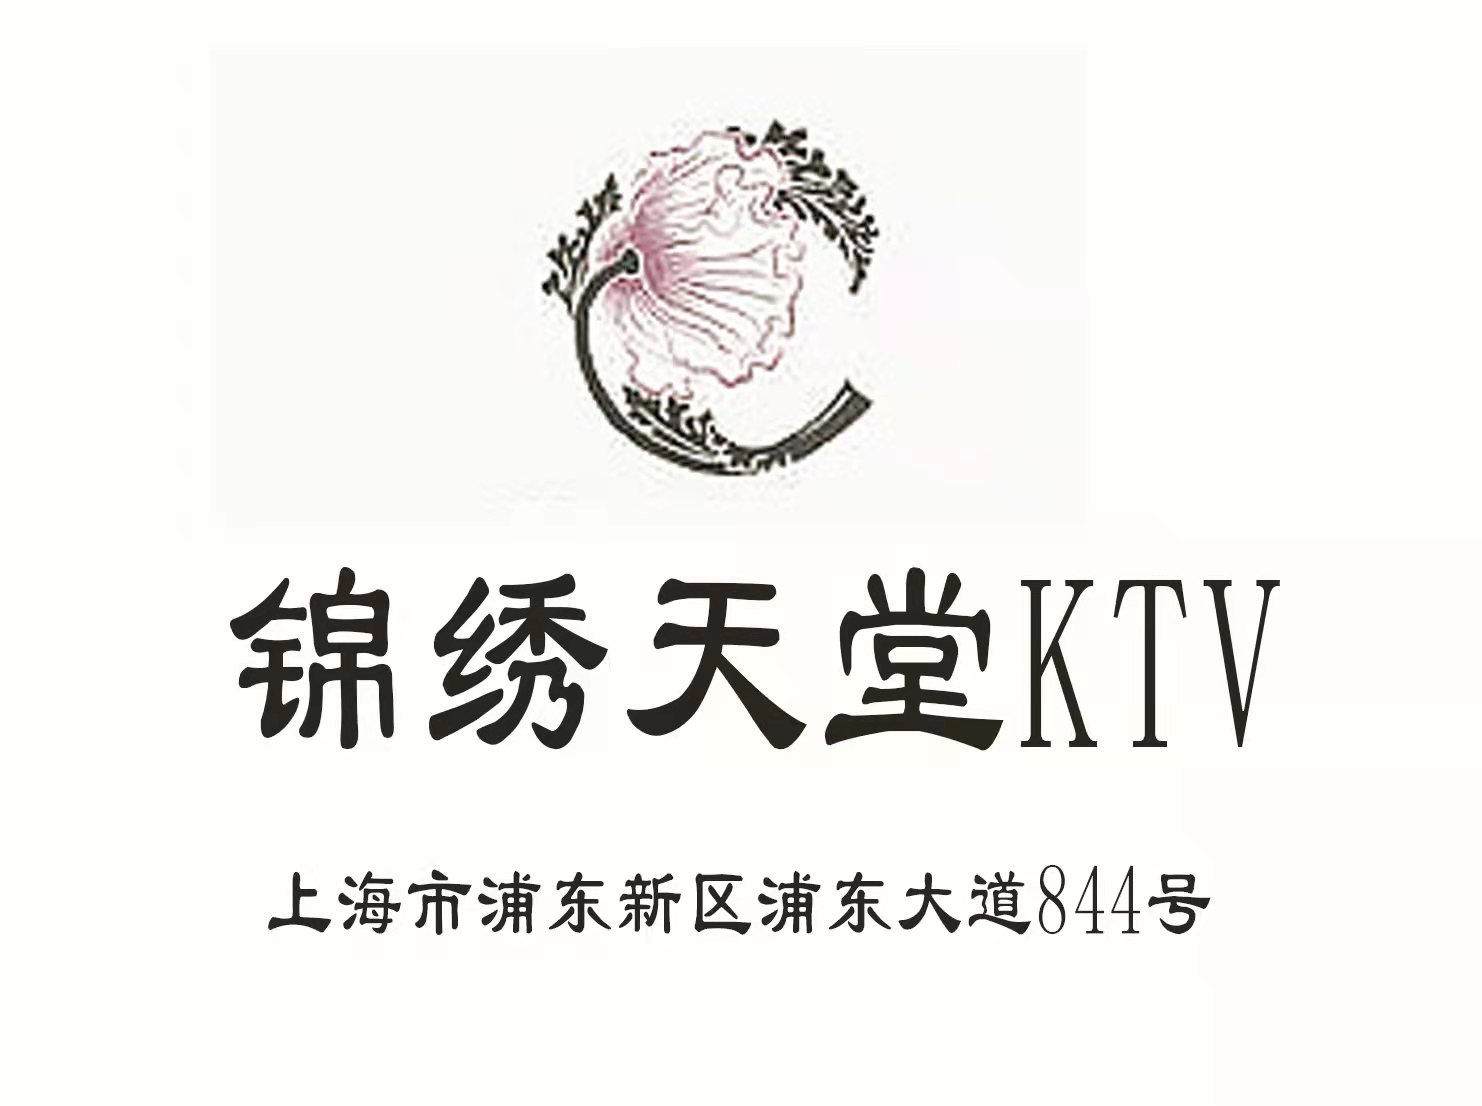 上海锦绣天堂KTV